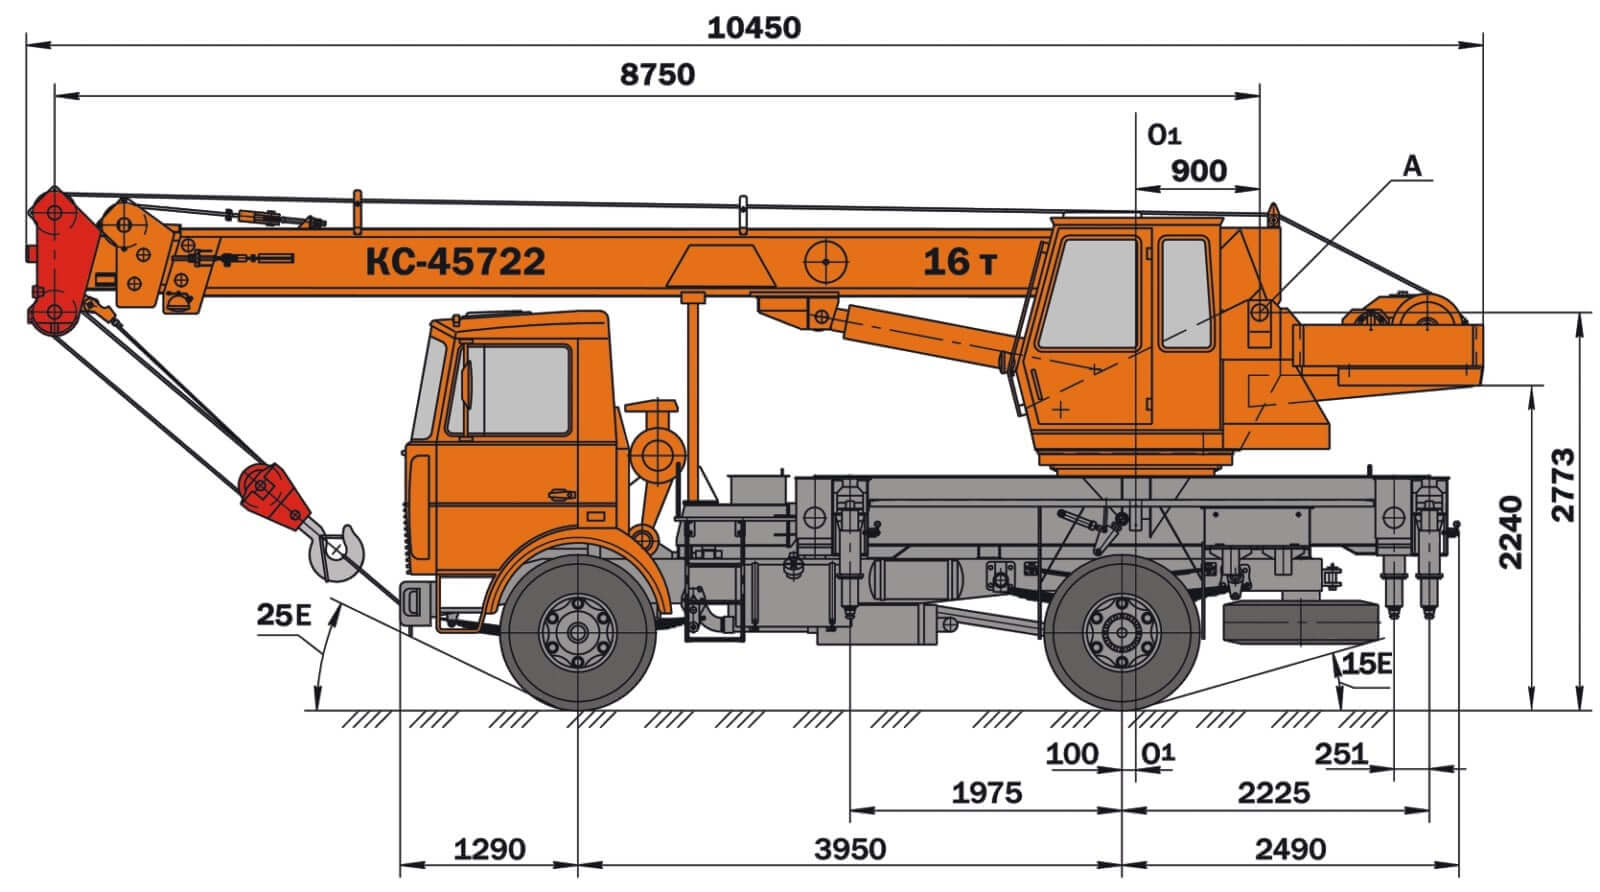 Кран кс 45717 ивановец 25 тонн — технические характеристики